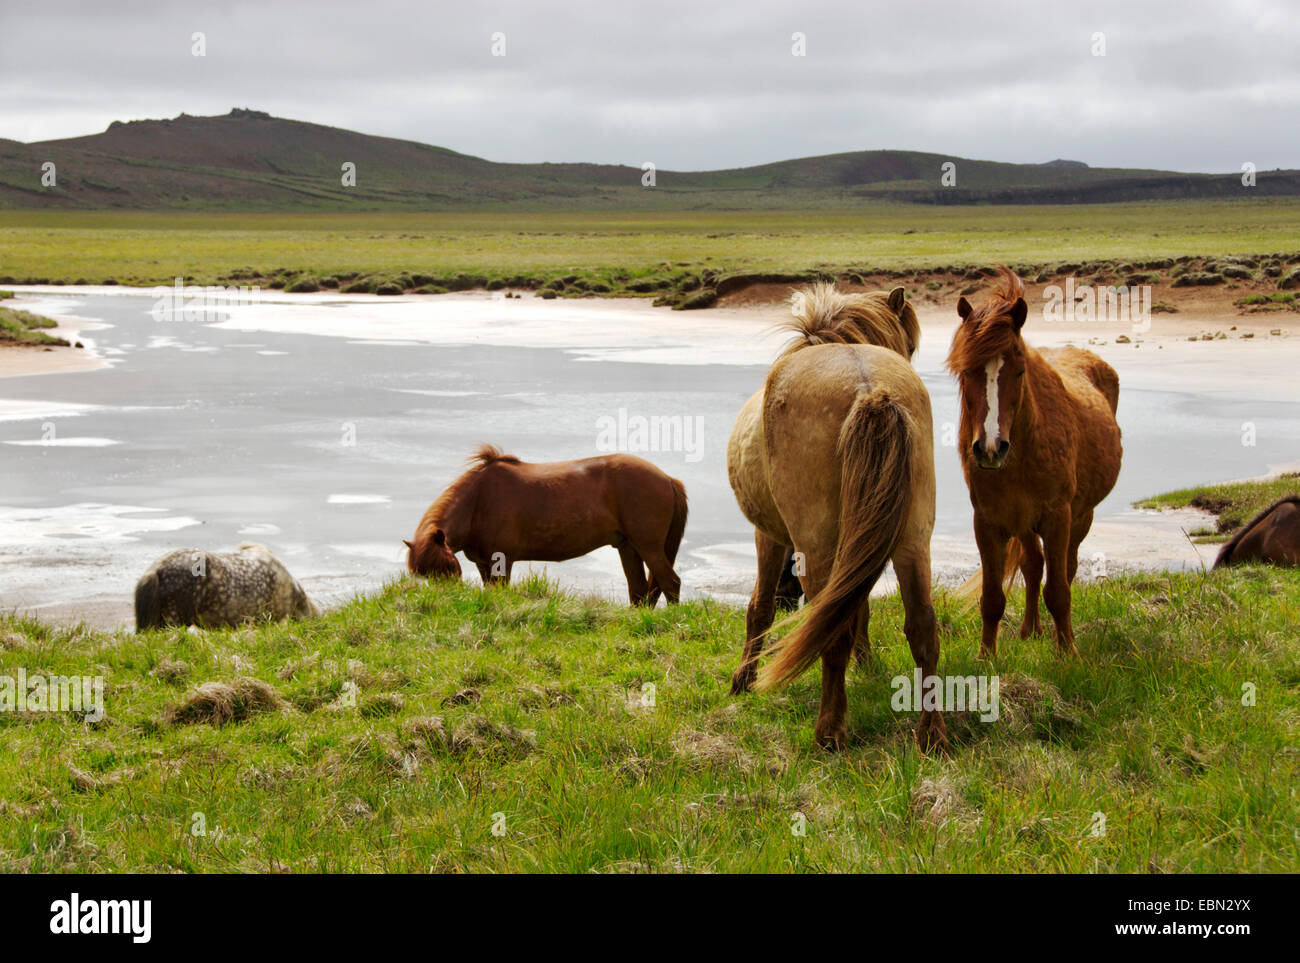 Islandic horse, Iceland pony (Equus przewalskii f. caballus), individuals at water, Iceland Stock Photo